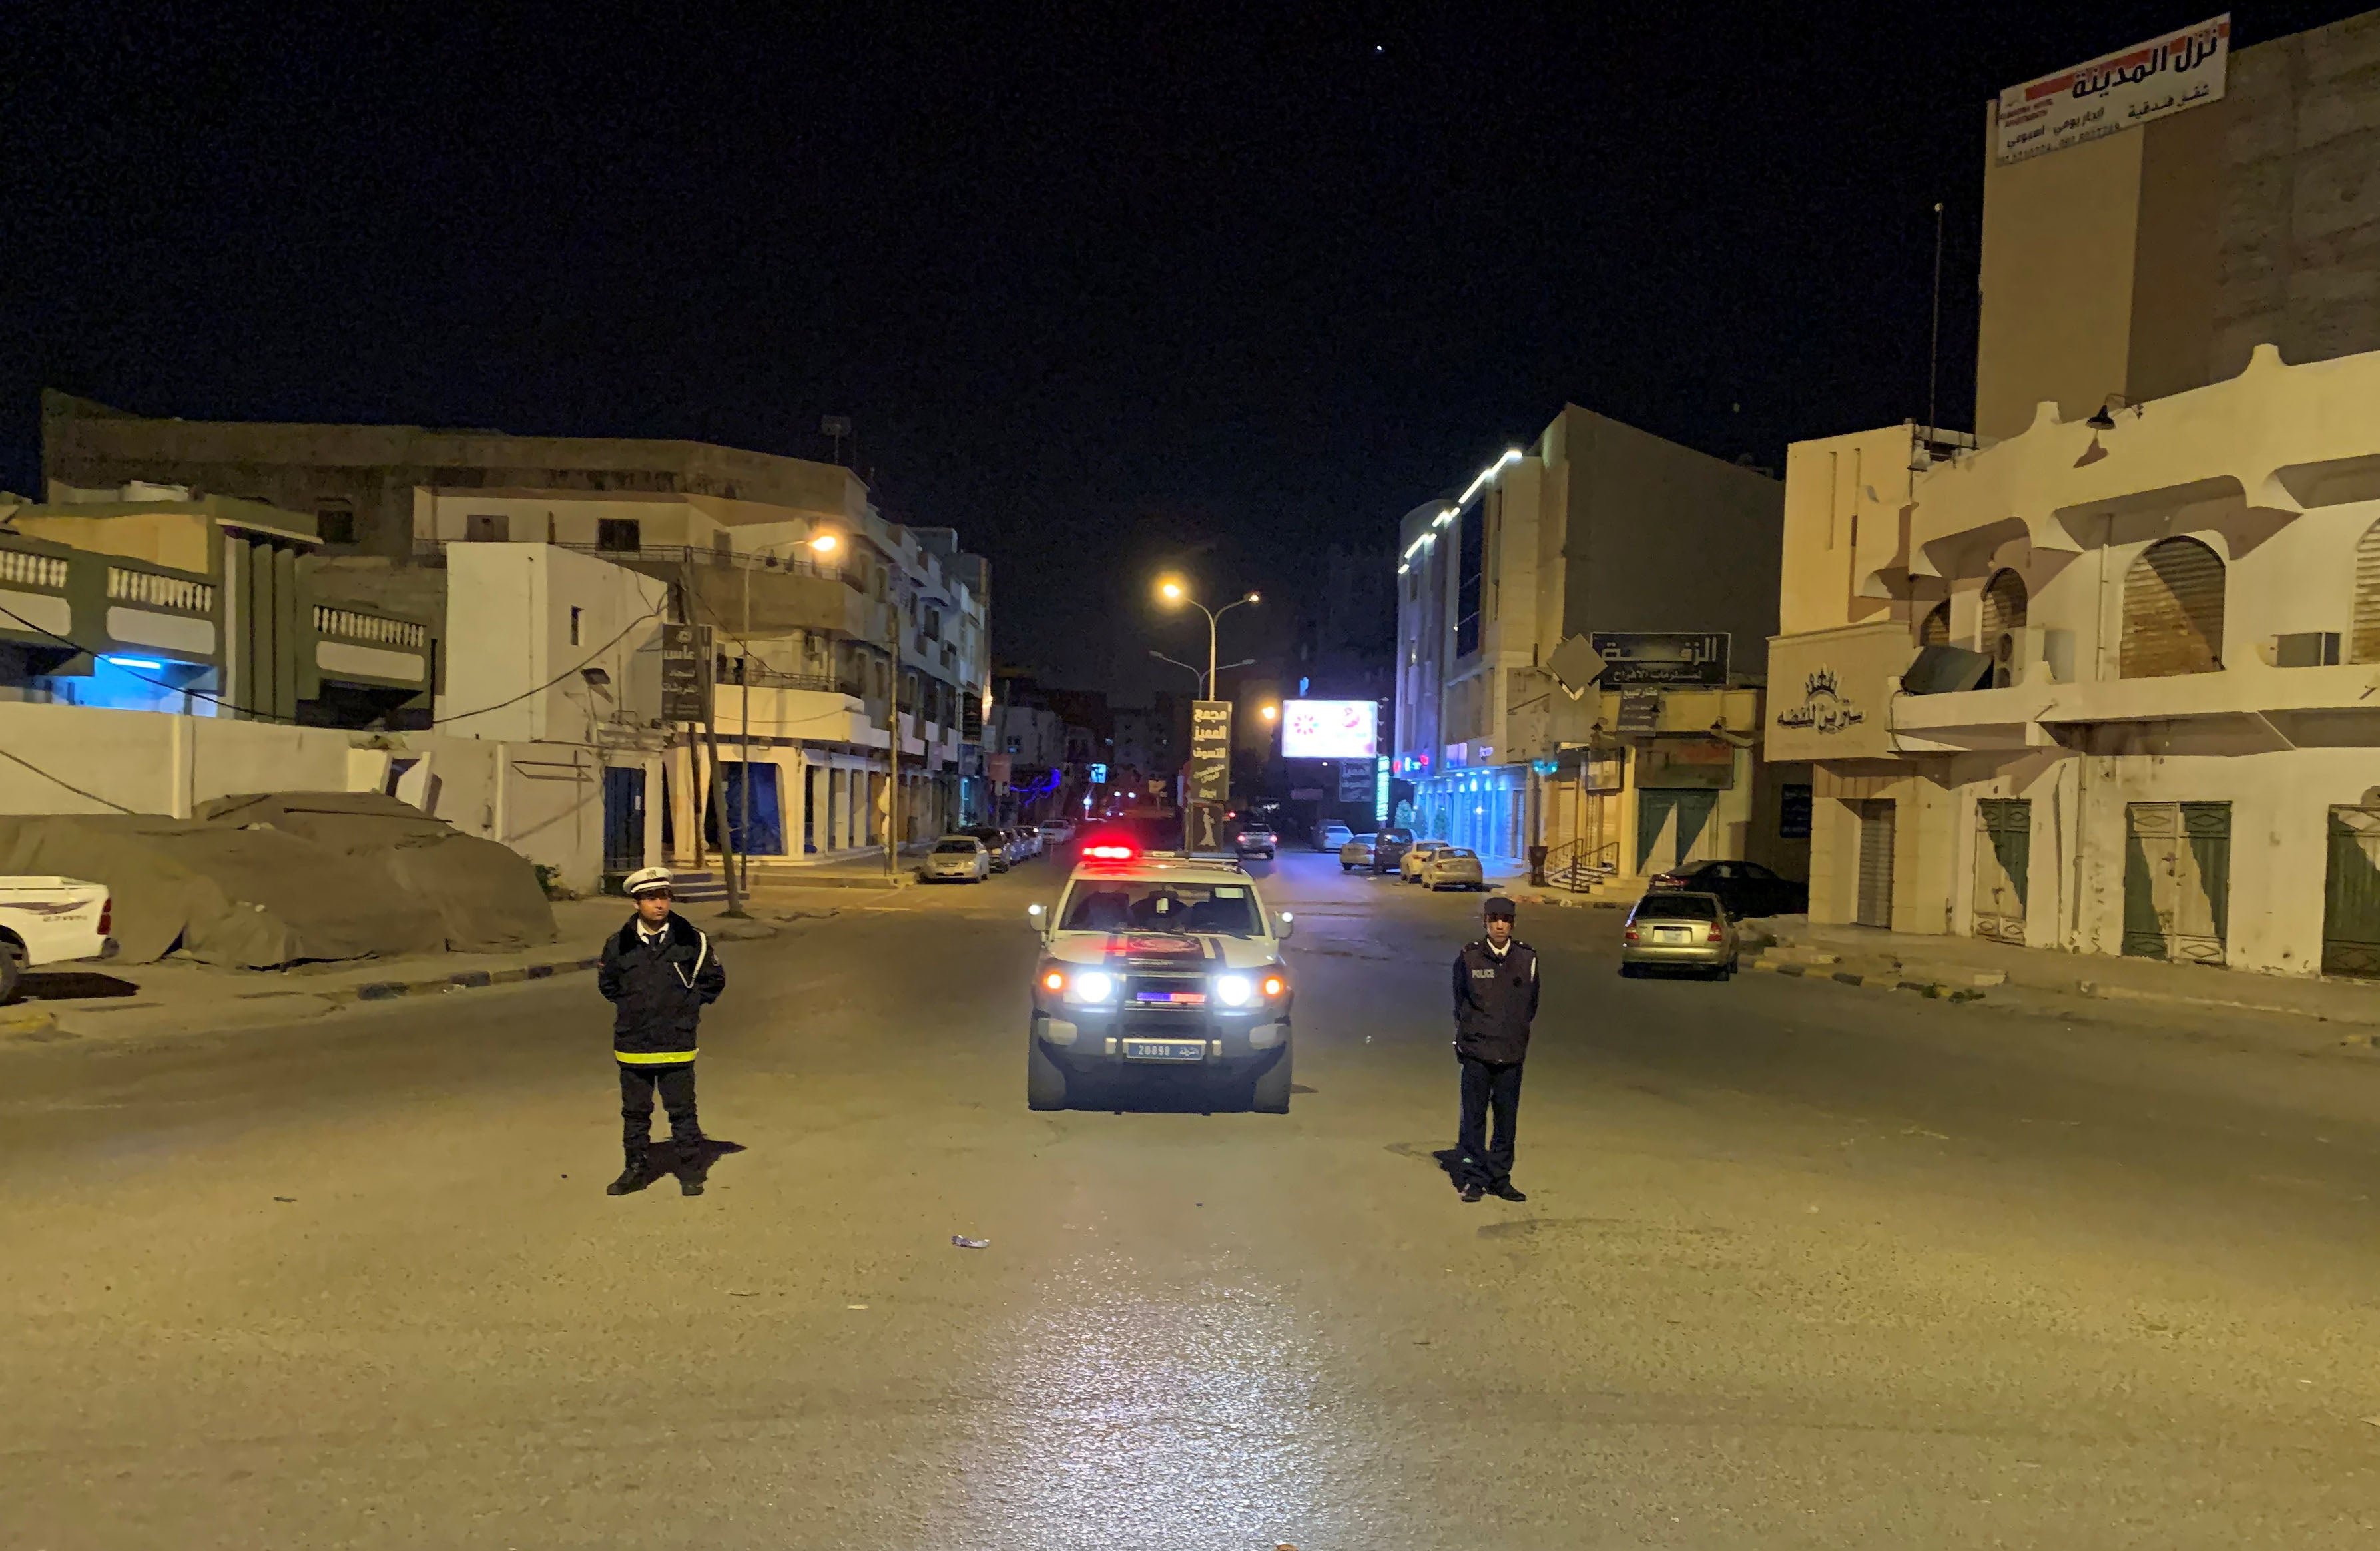 شرطيان يقفان وسط الطريق خلال حظر تجوّل فُرِض ضمن التدابير الاحترازية لمواجهة فيروس كورونا المستجد، في مصراتة، ليبيا في 22 مارس/آذار 2020. 